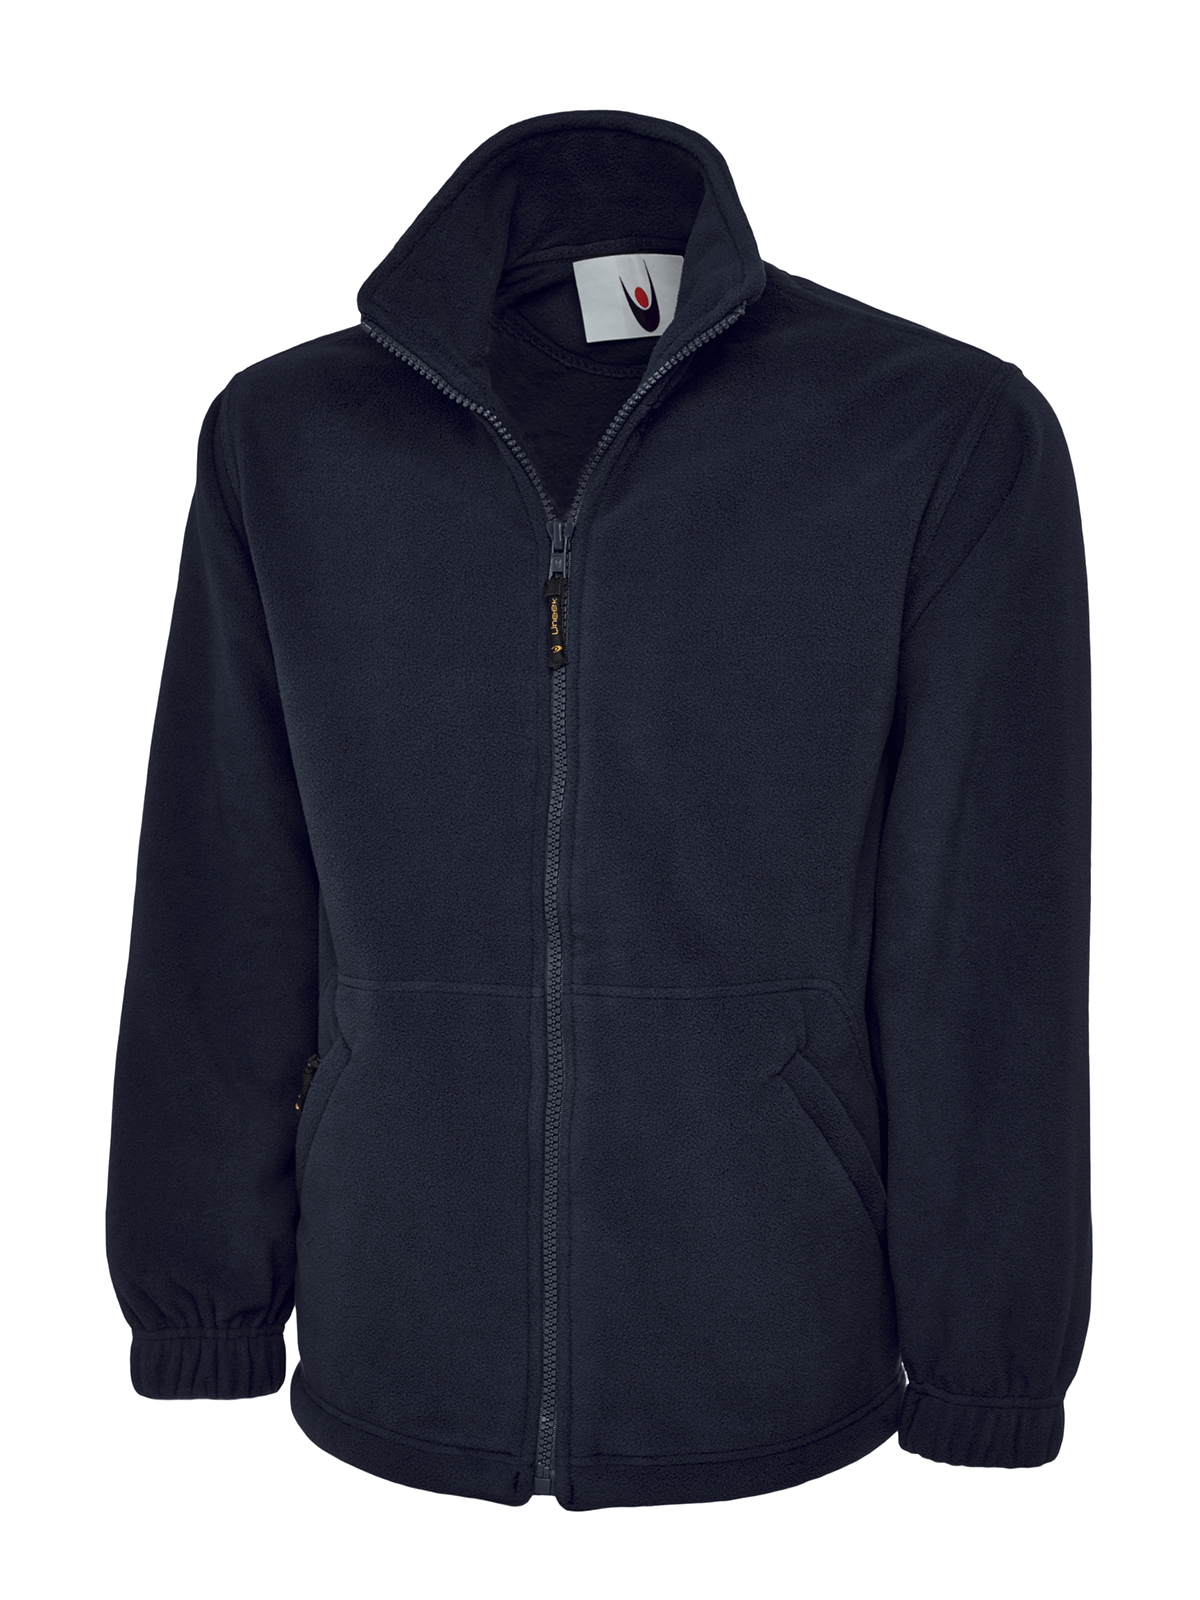 Full Zip Fleece Jacket, Navy - Size 5XL